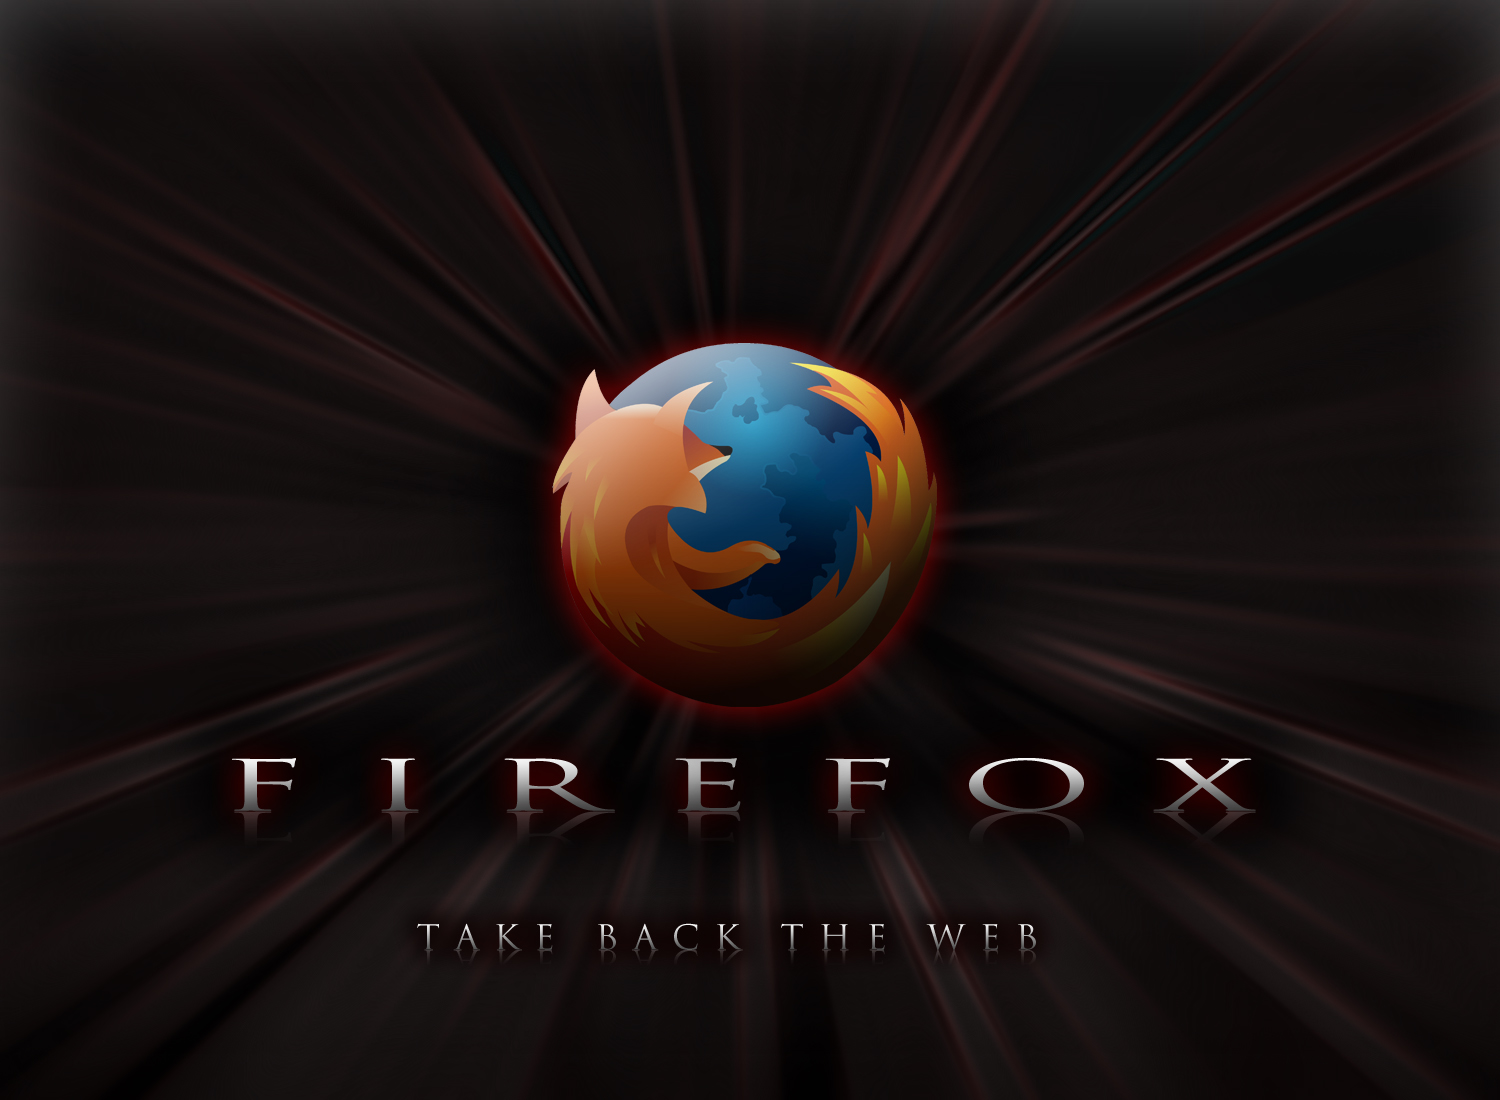 Wallpaper Puter Firefox